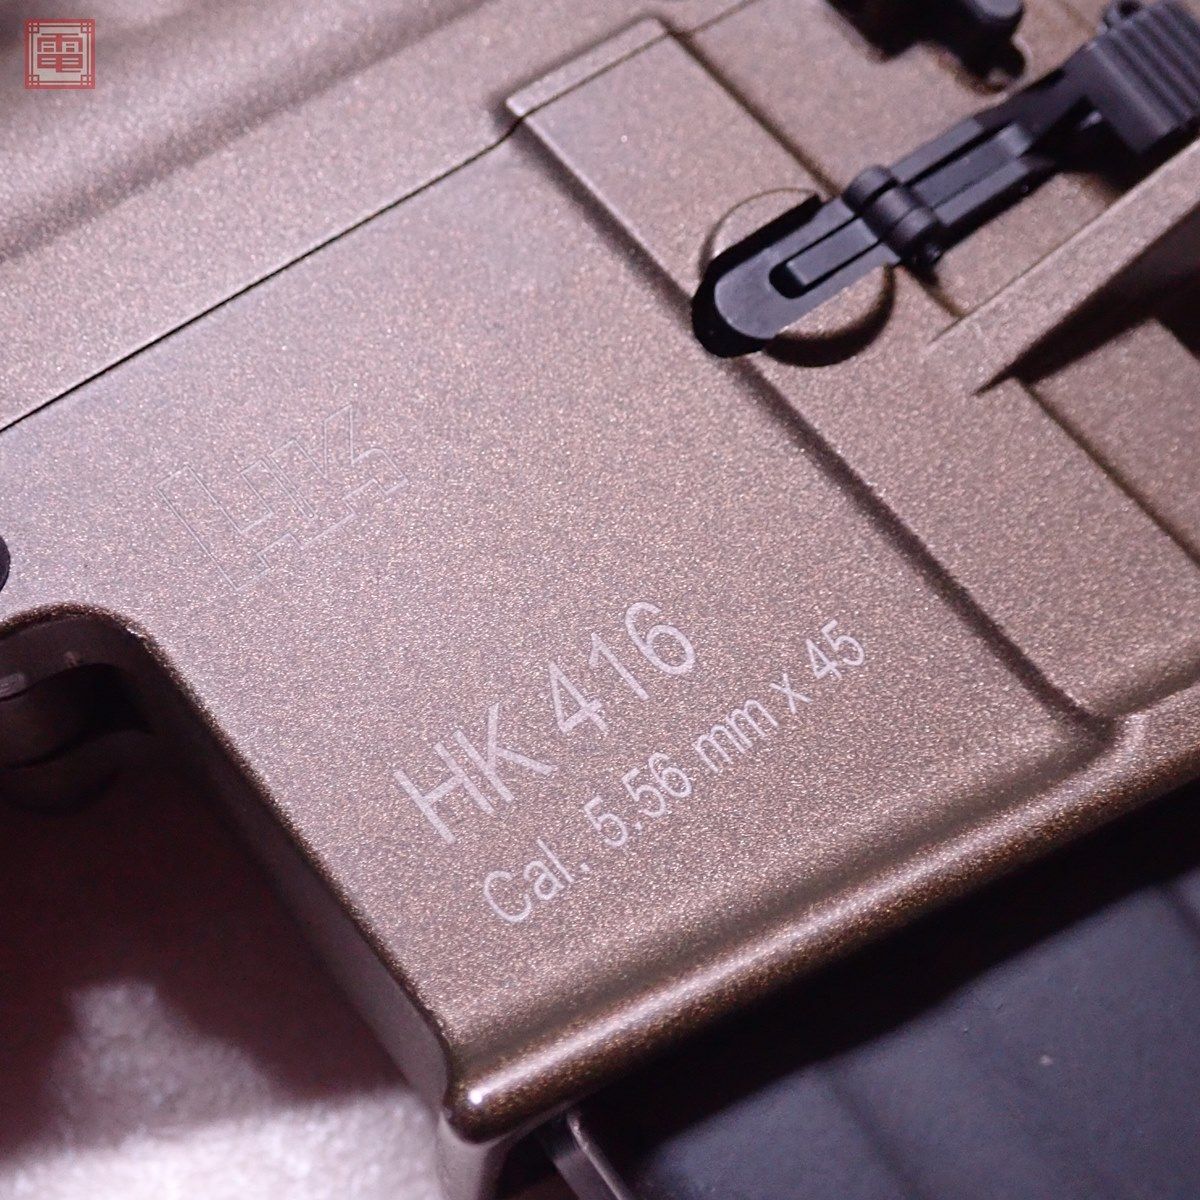 VFC ガスブロ H&K HK416 CO2カスタム NPAS 外装カスタム GEISSELE MAGPUL マグプル GBB 現状品【40_画像10